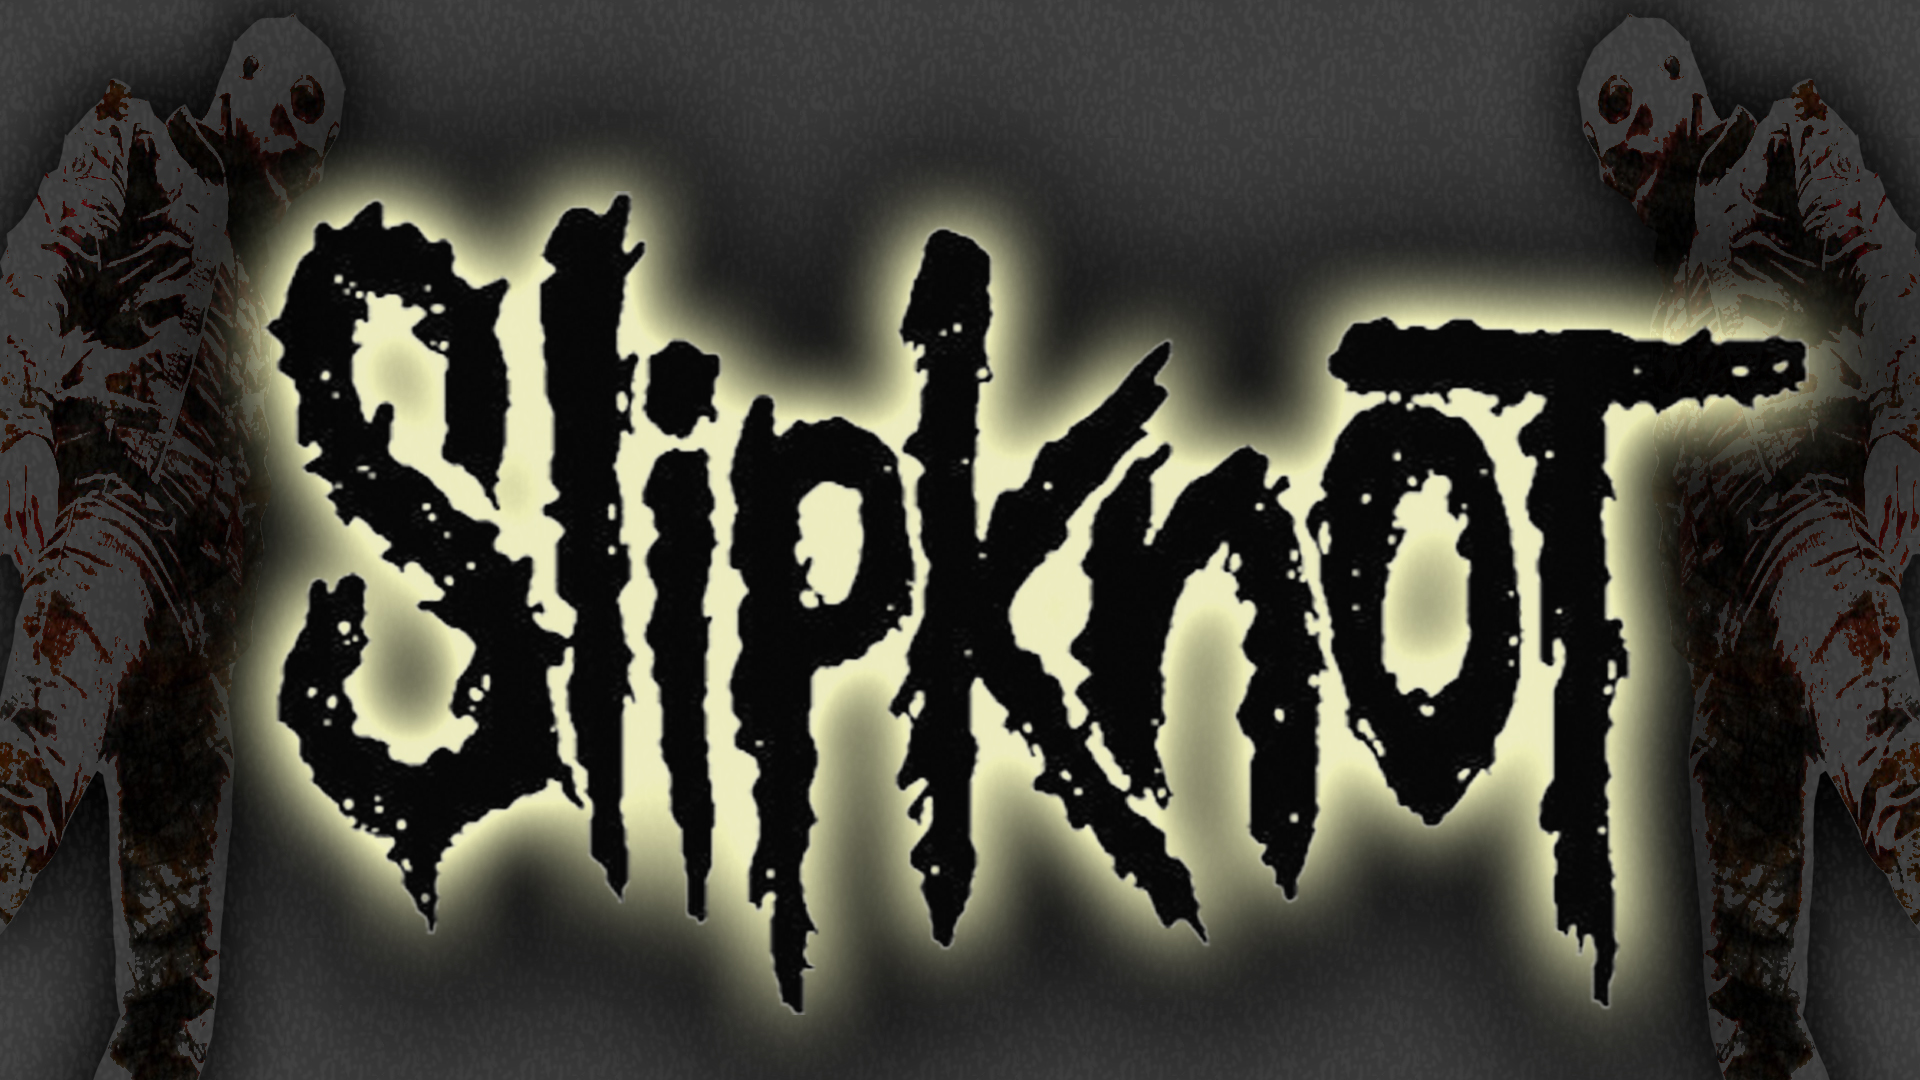 Slipknot Wallpapers